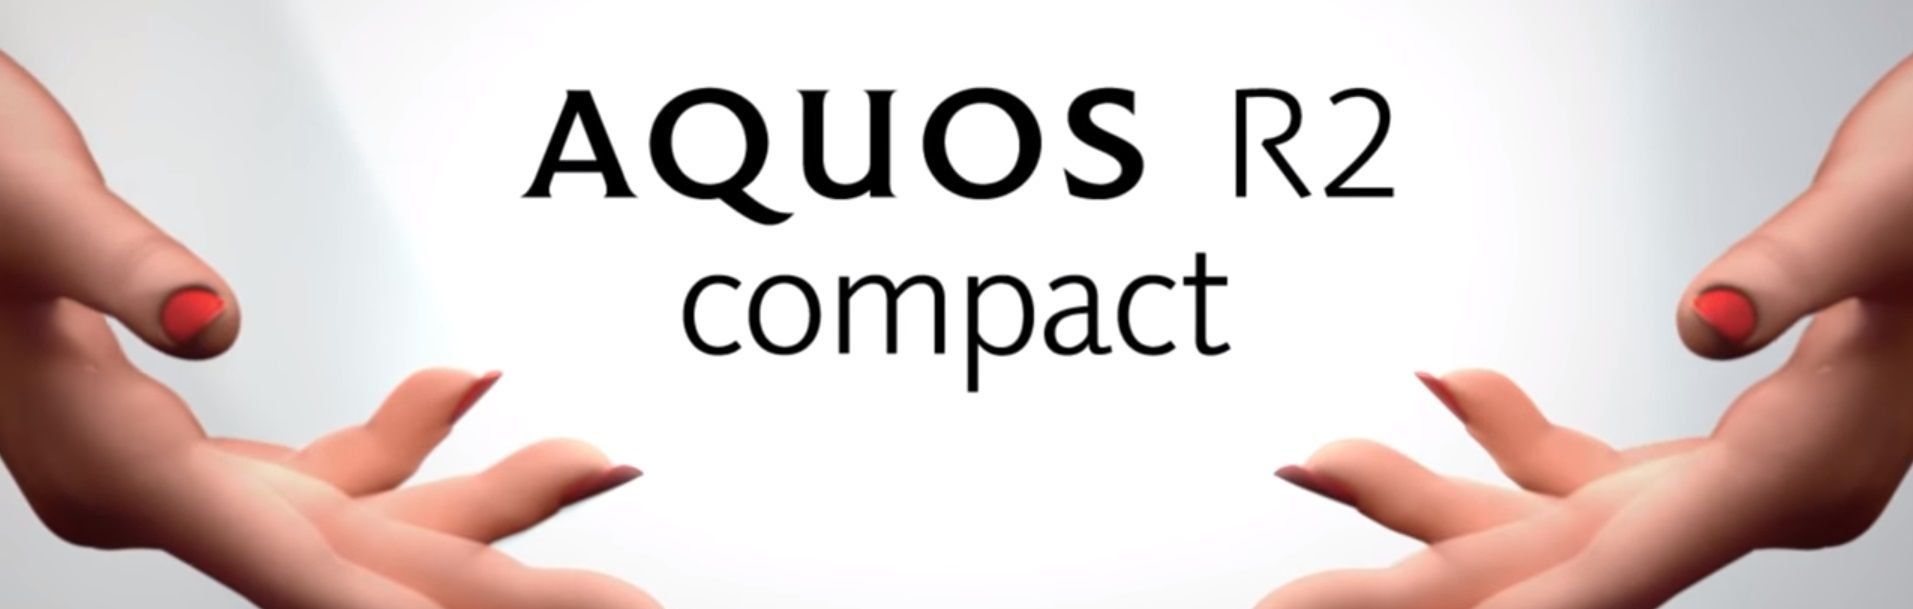 智能手機夏普 Aquos R2 Compact - 優點和缺點